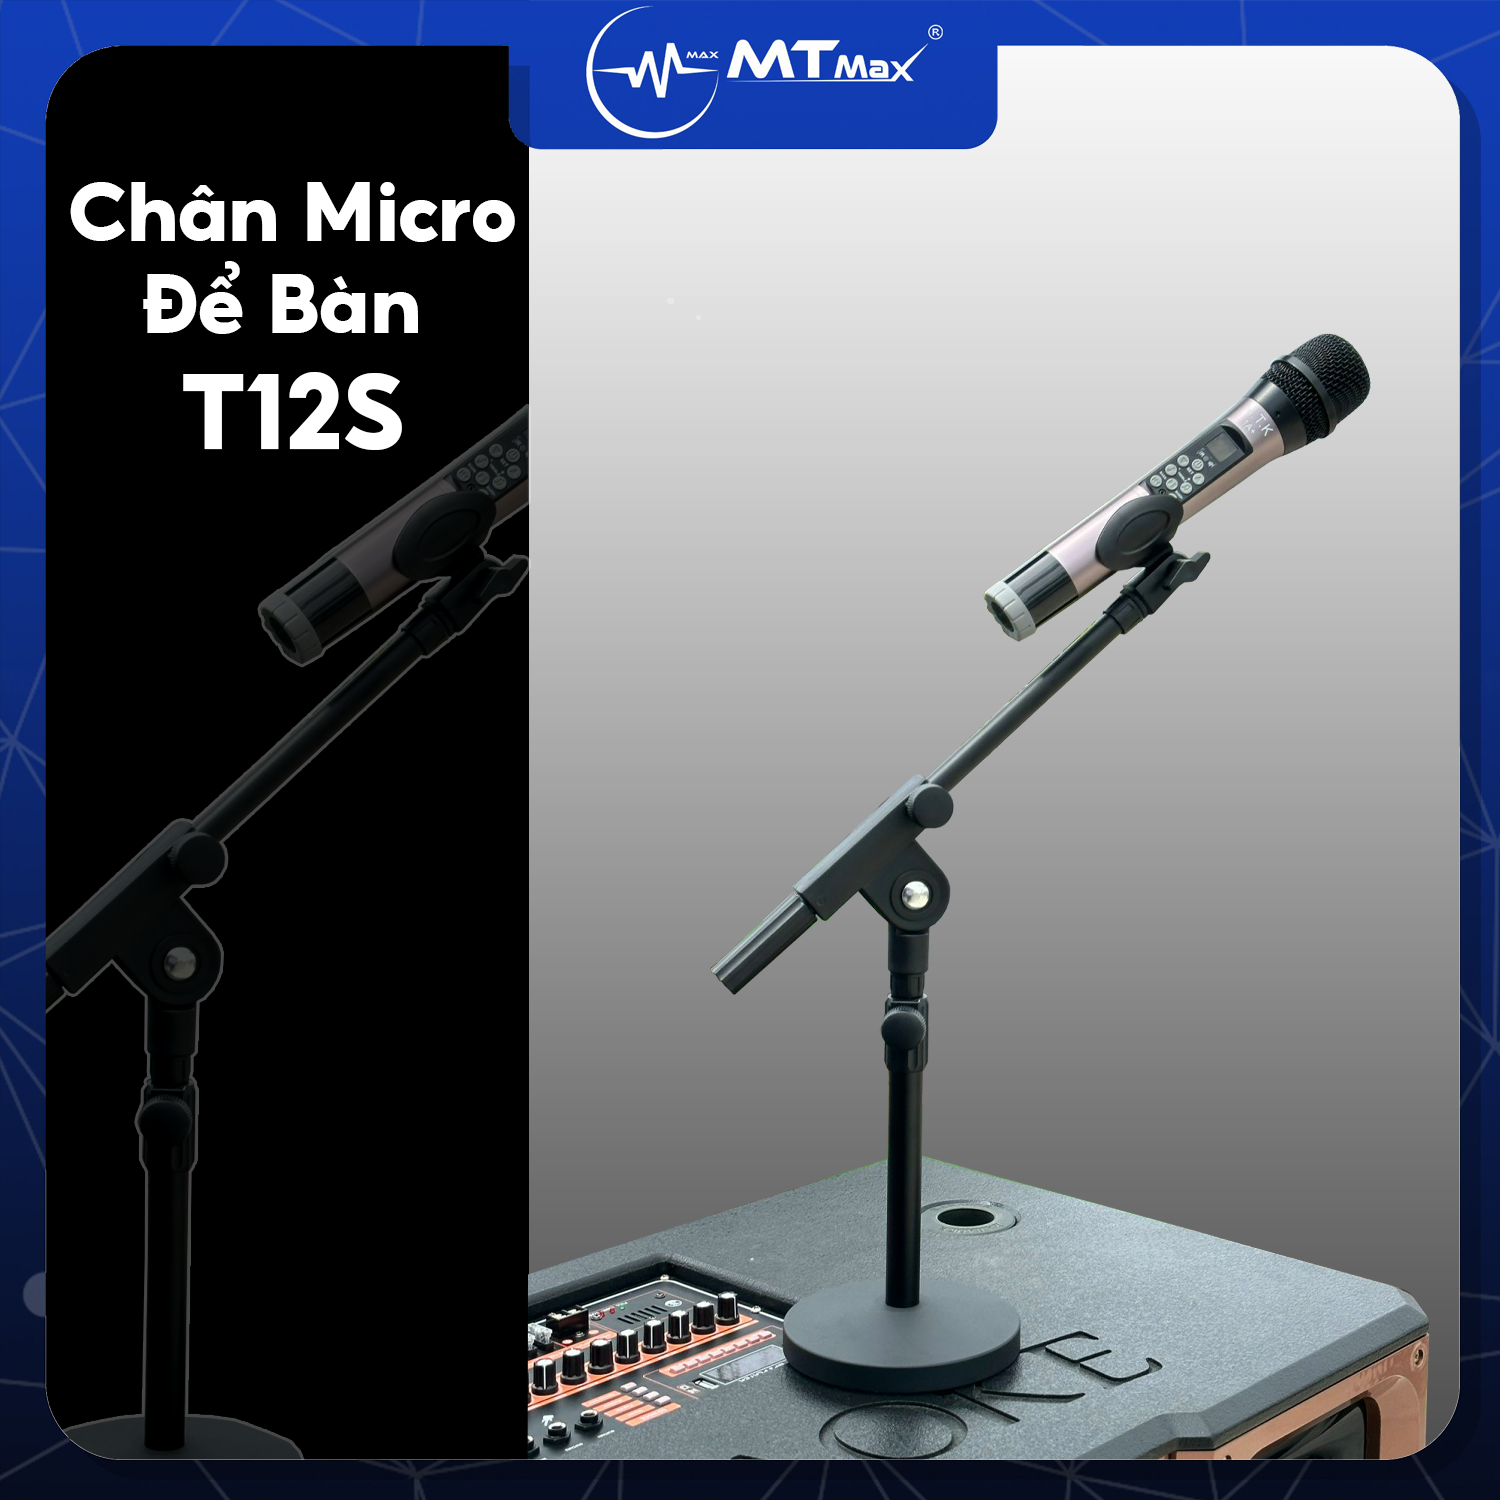 Bộ Chân Micro Để Bàn T12S - Giá Đỡ Micro Kim Loại Để Bàn Sử Dụng Cho Nhiều Loại Microphone Đa Năng, Có Thể Điều Chỉnh Chiều Cao Và Góc Độ Rất Thuận Tiện.